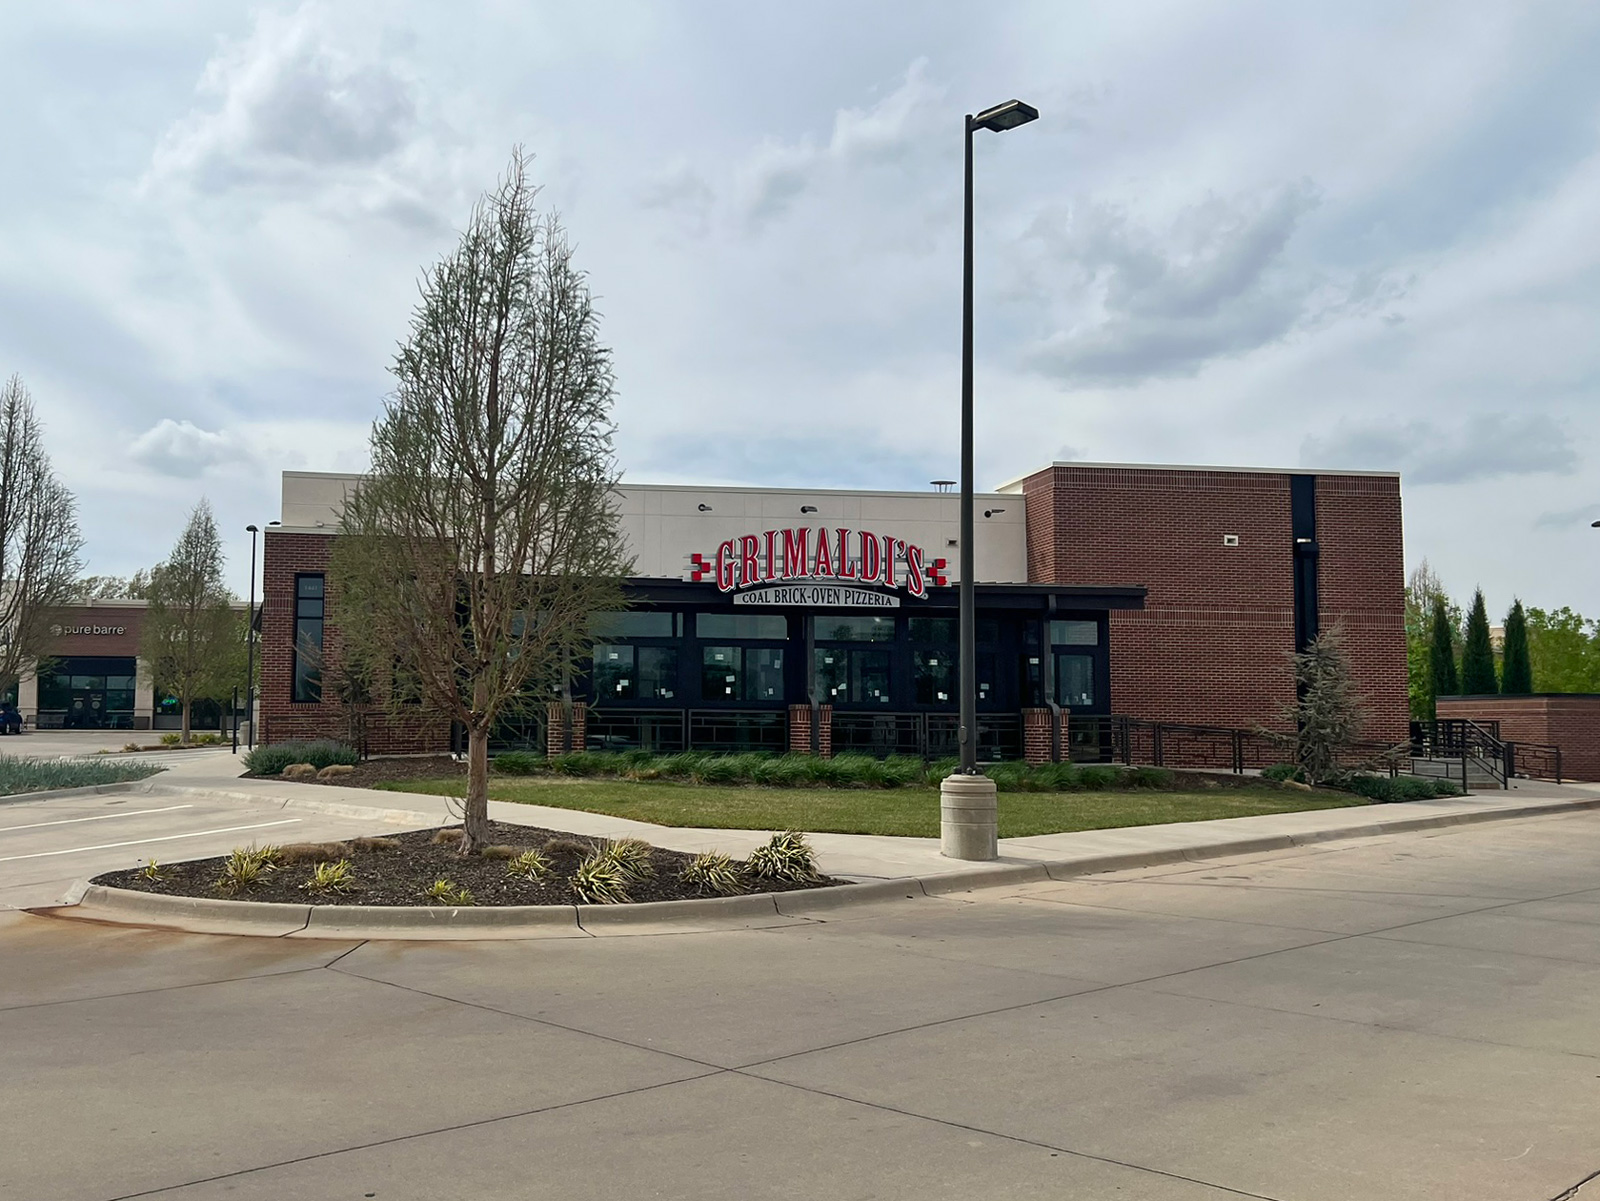 Grimaldi's Pizzeria at the Waterfront Plaza in Wichita, KS